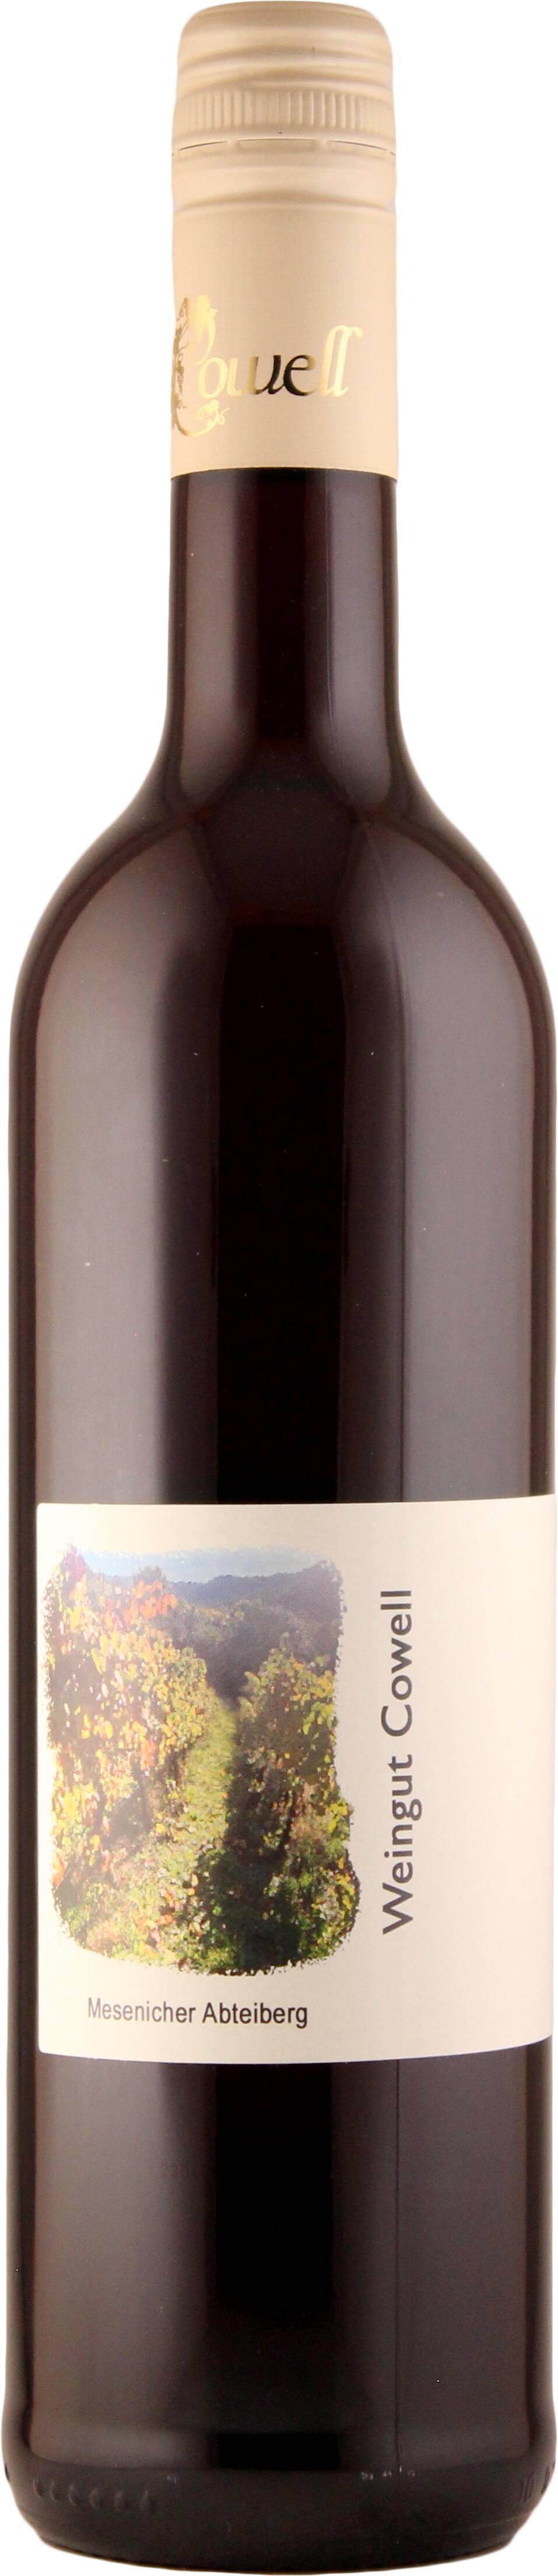 Pinot Noir Mesenich Abteiberg